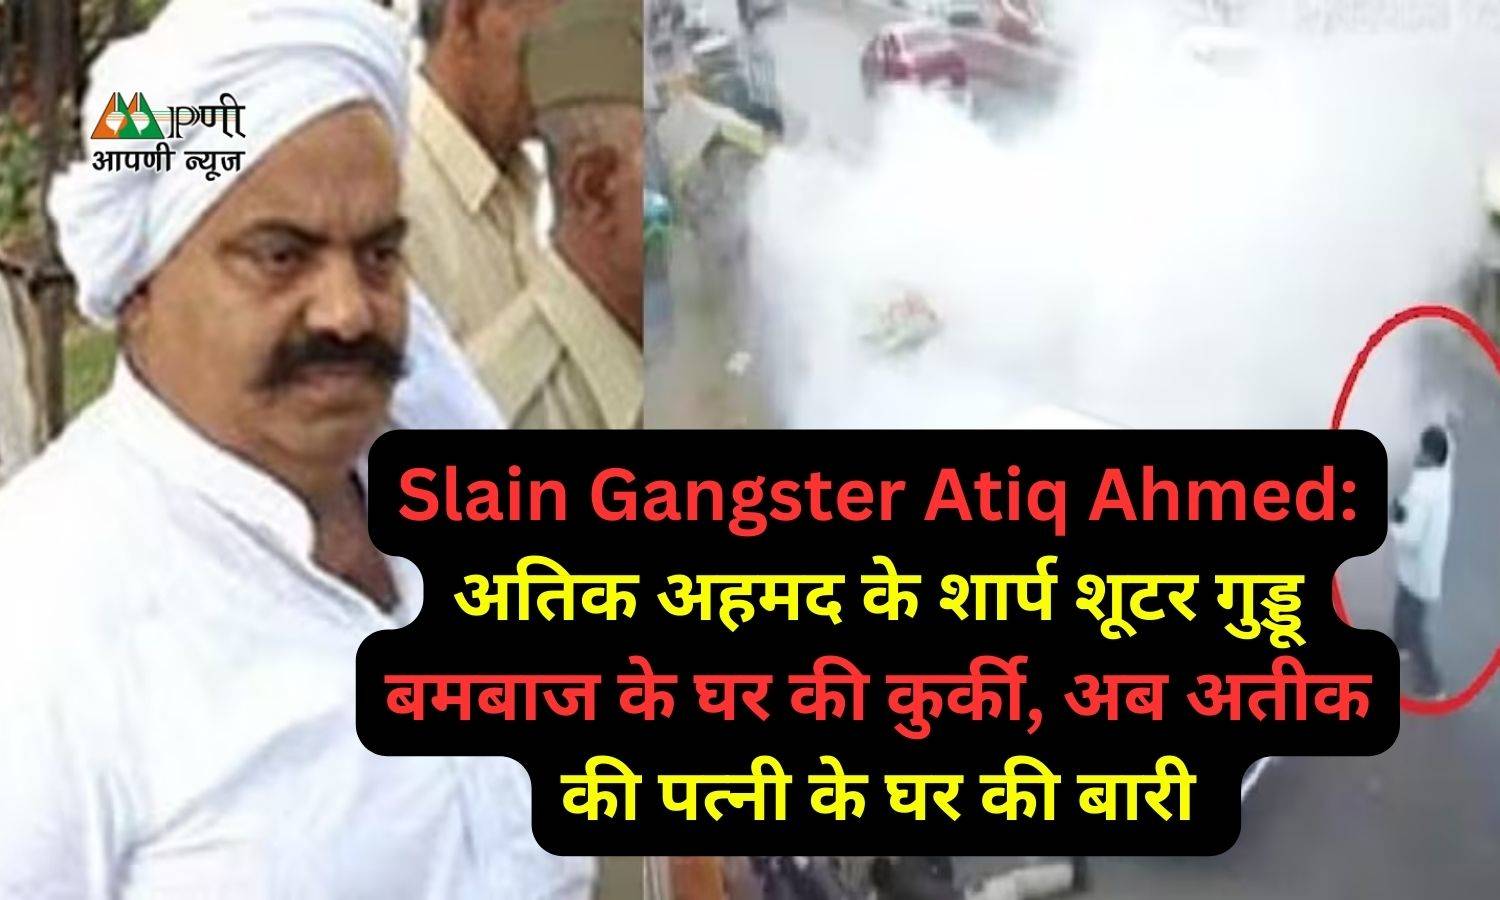 Slain Gangster Atiq Ahmed: अतिक अहमद के शार्प शूटर गुड्डू बमबाज के घर की कुर्की, अब अतीक की पत्नी के घर की बारी